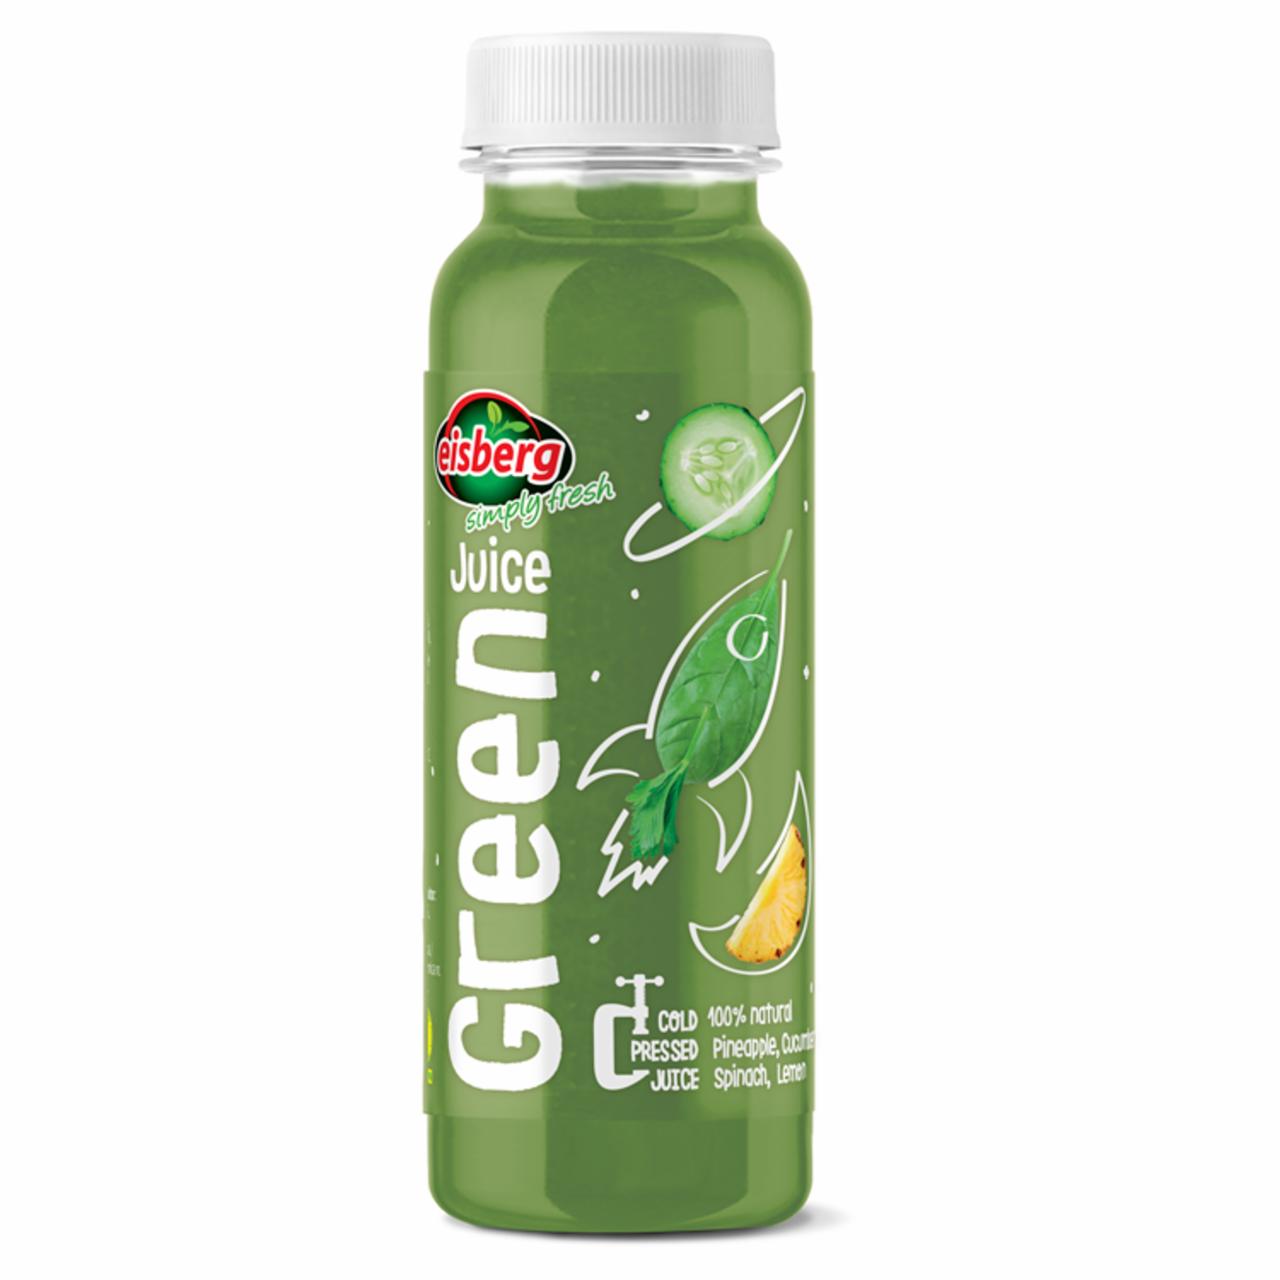 Képek - Eisberg Green Juice gyümölcs- és zöldséglémix 250 ml